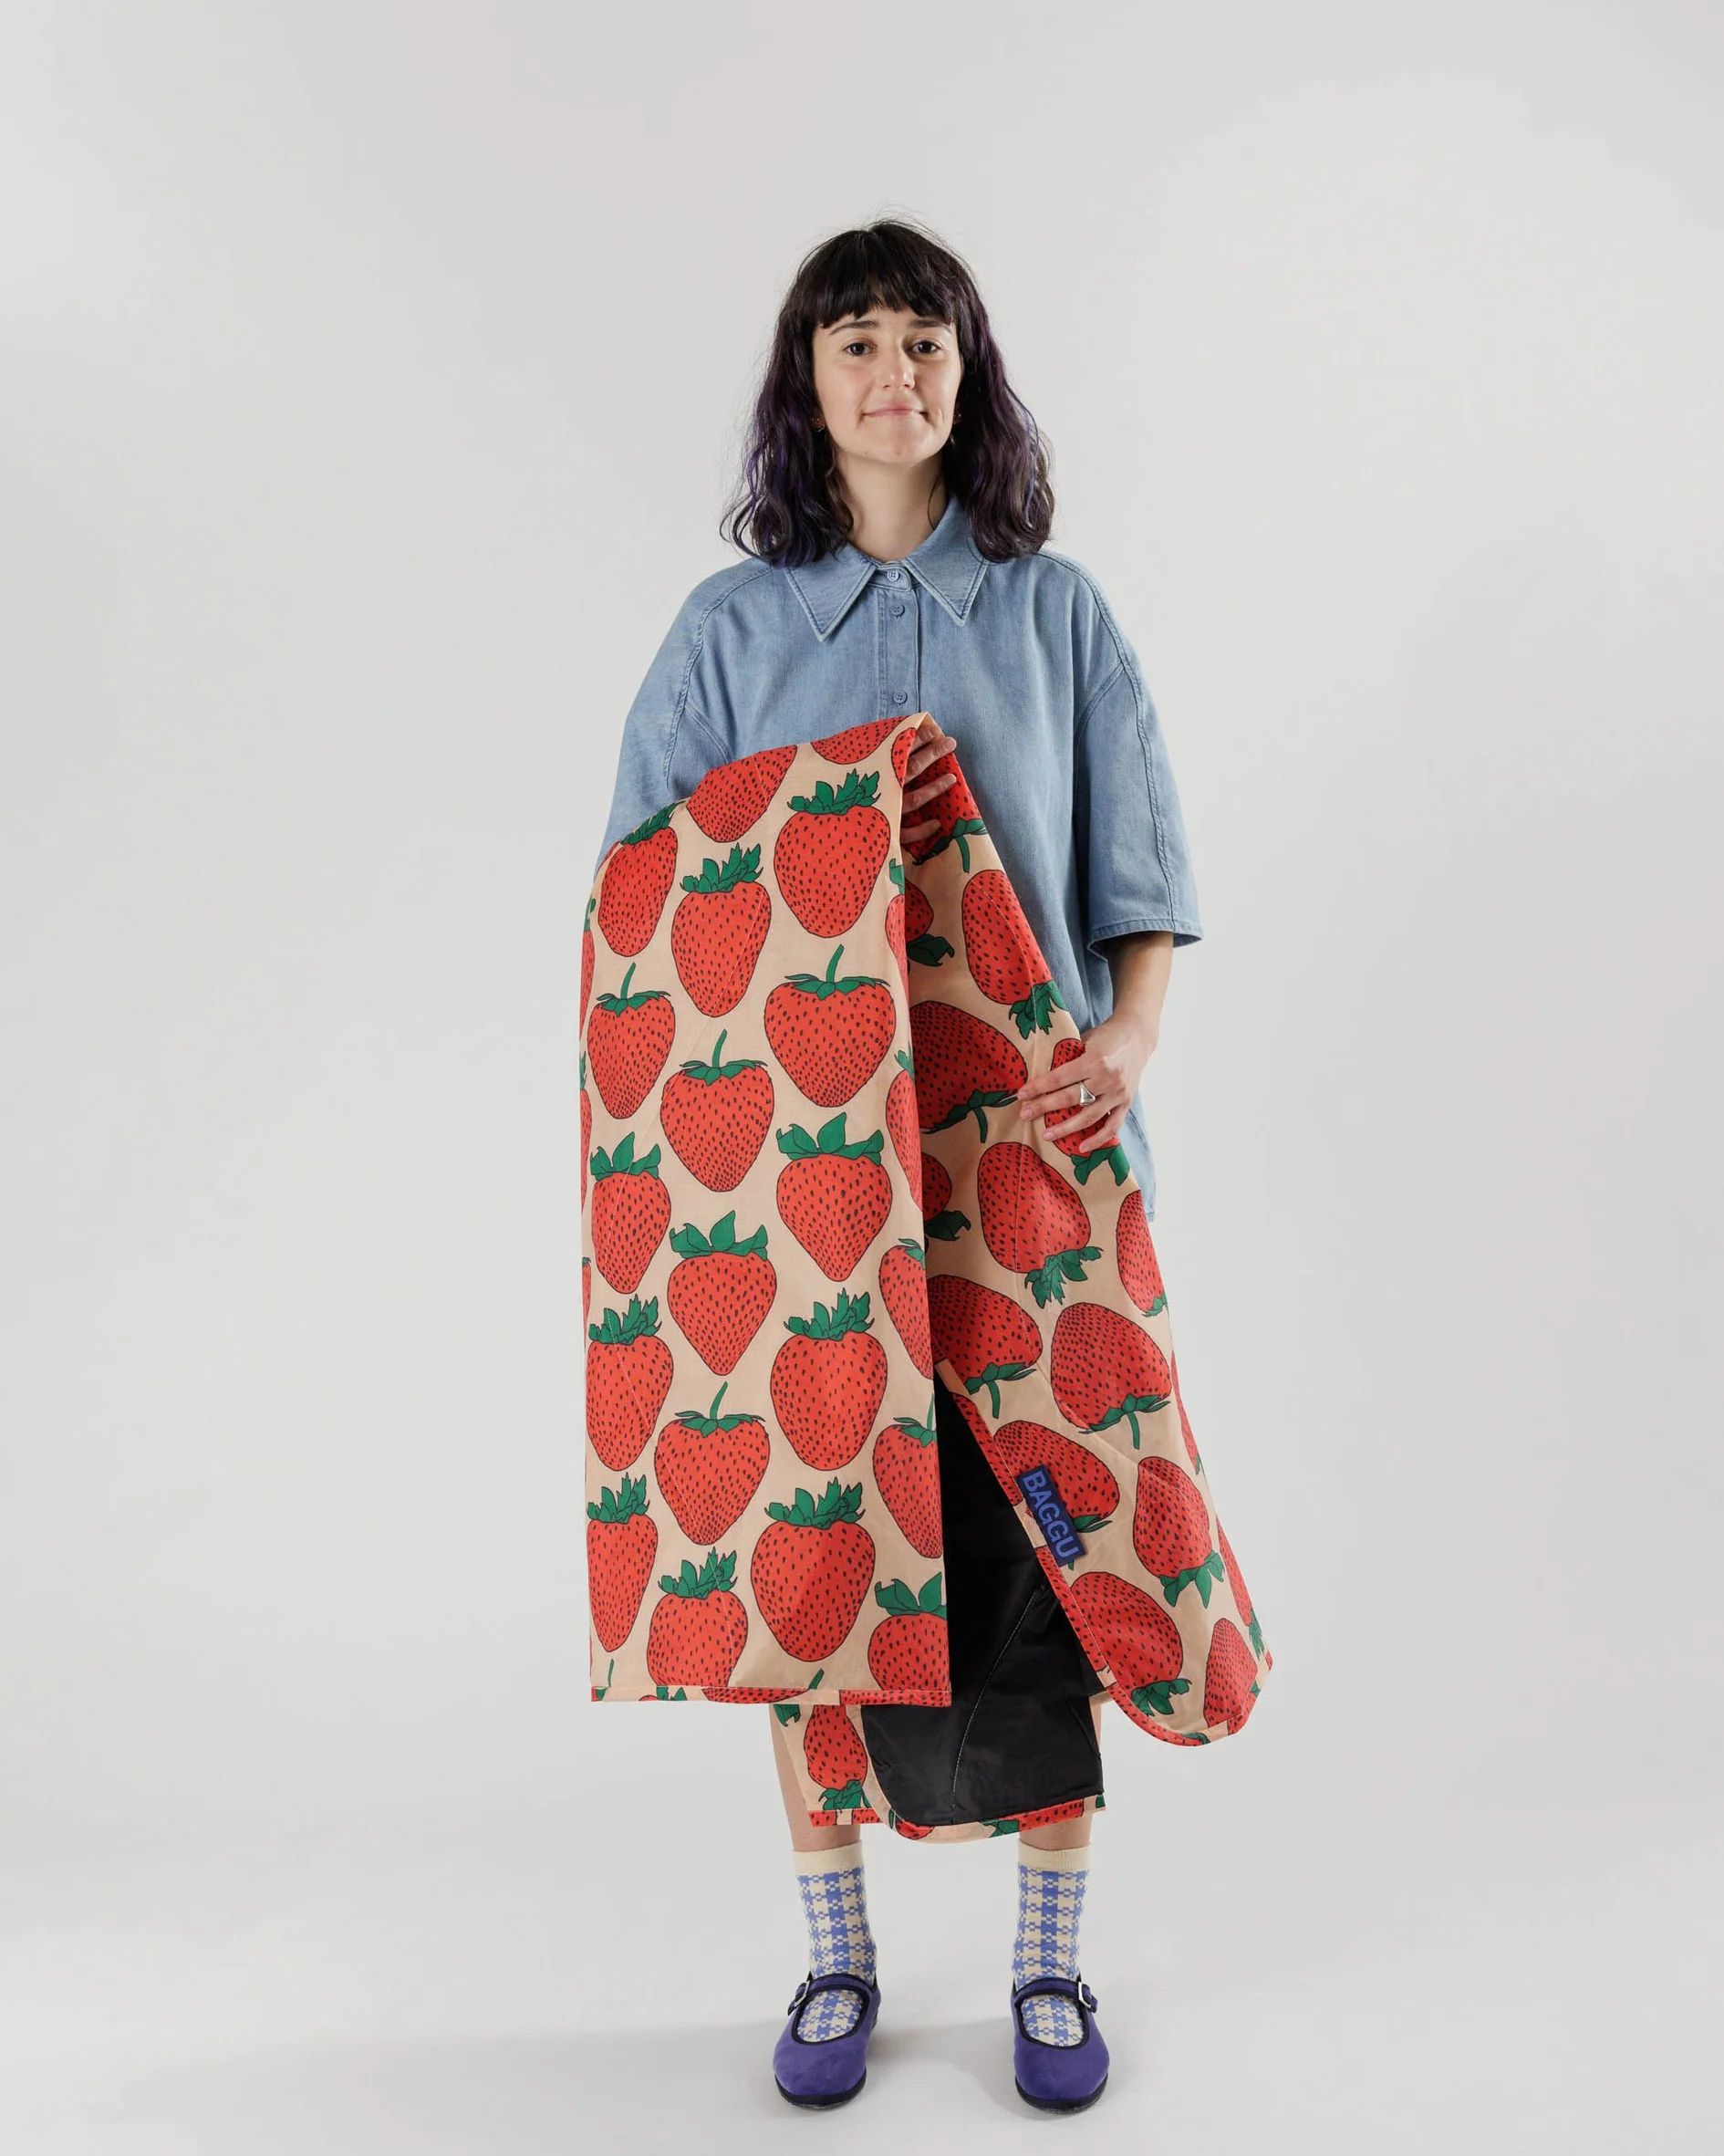 Puffy Picnic Blanket : Strawberry - Baggu | BAGGU